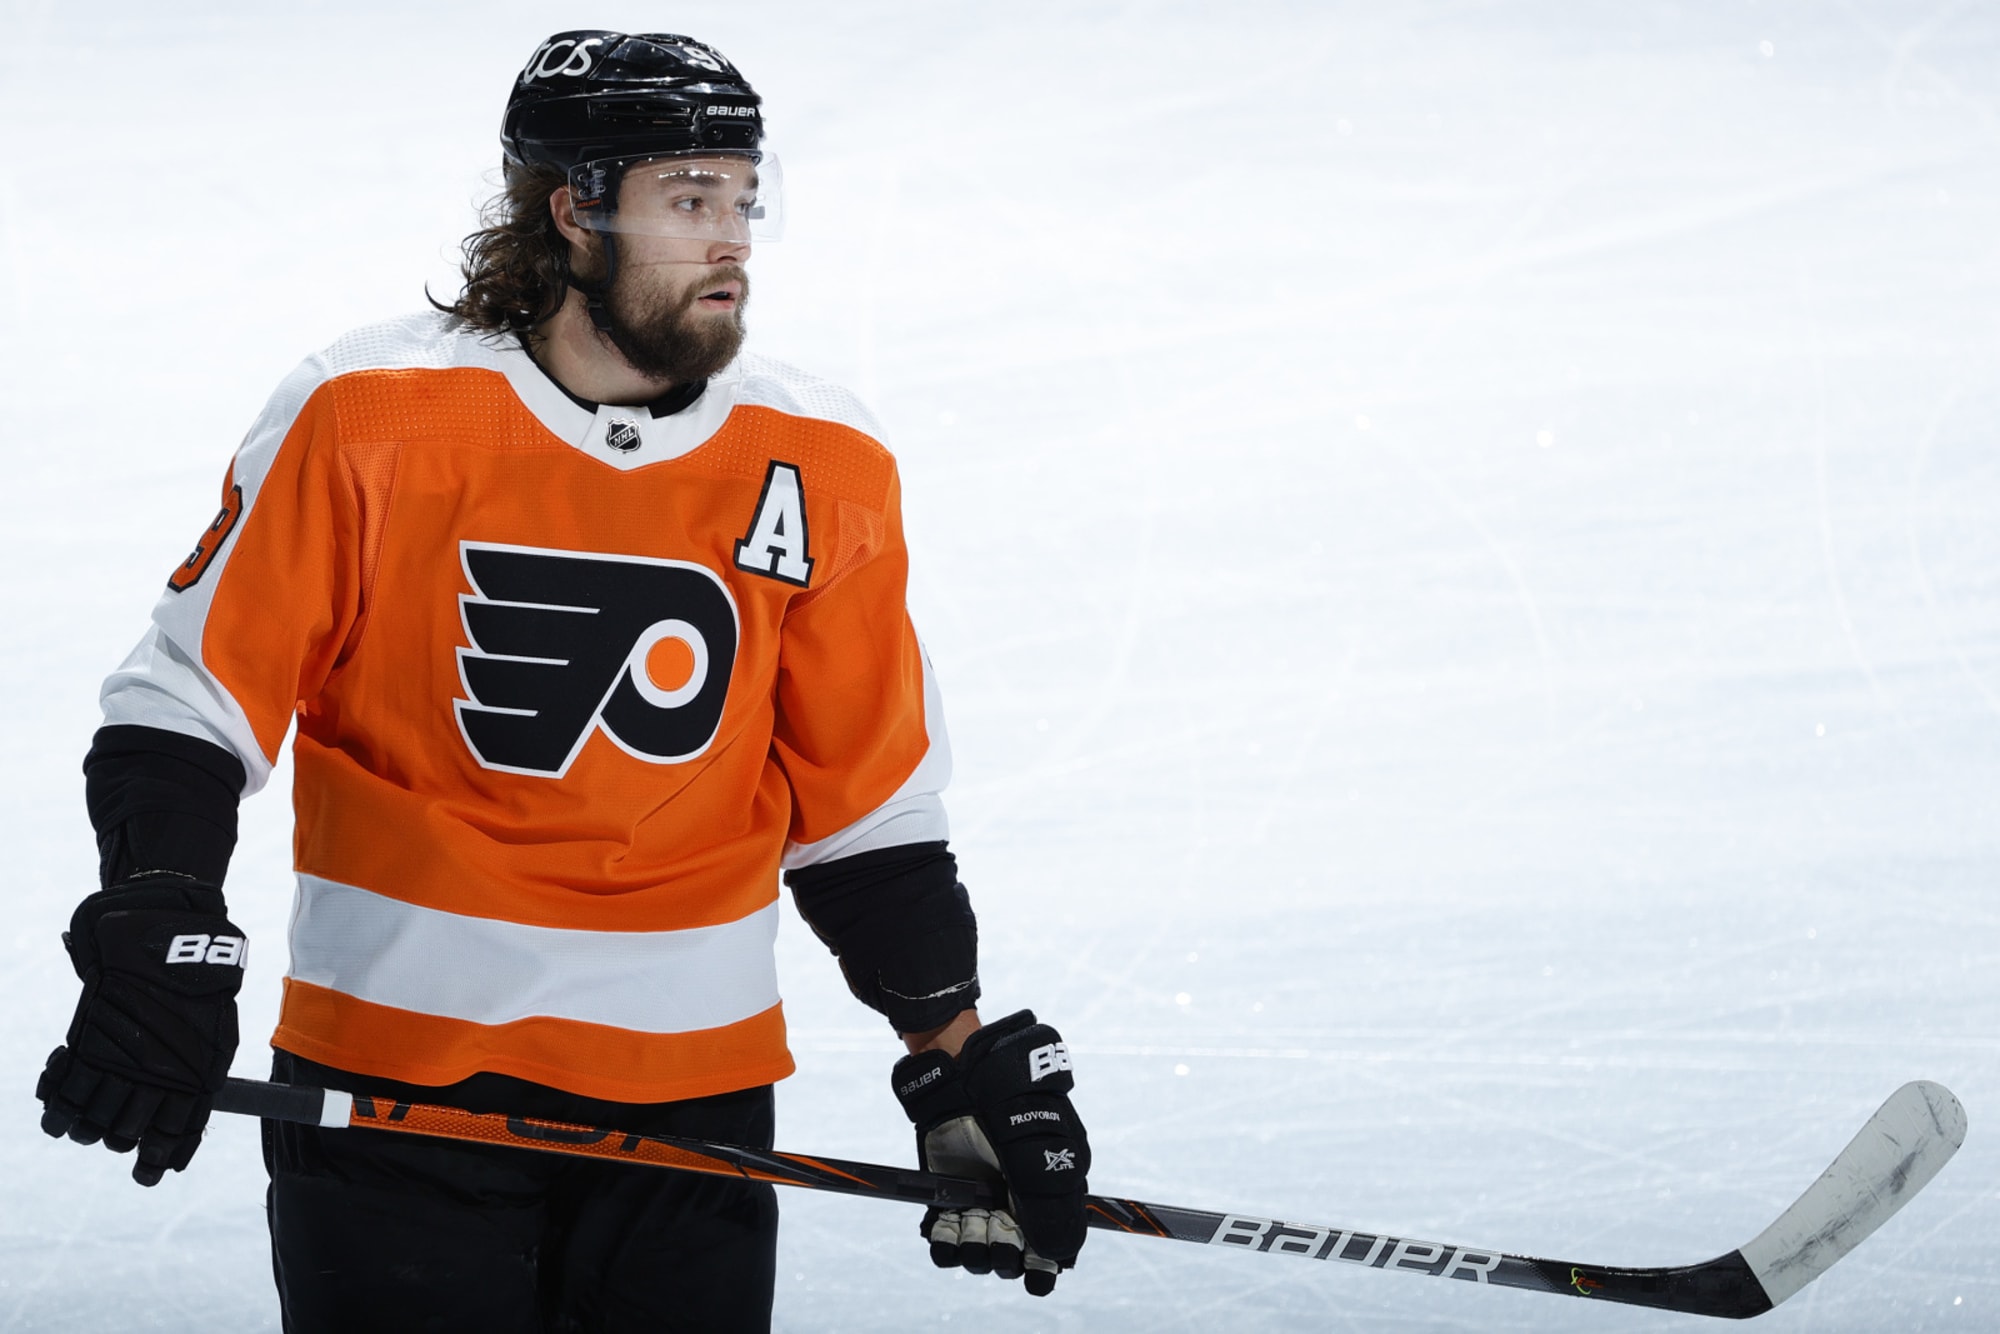 ESPN - Philadelphia Flyers defenseman Ivan Provorov has been